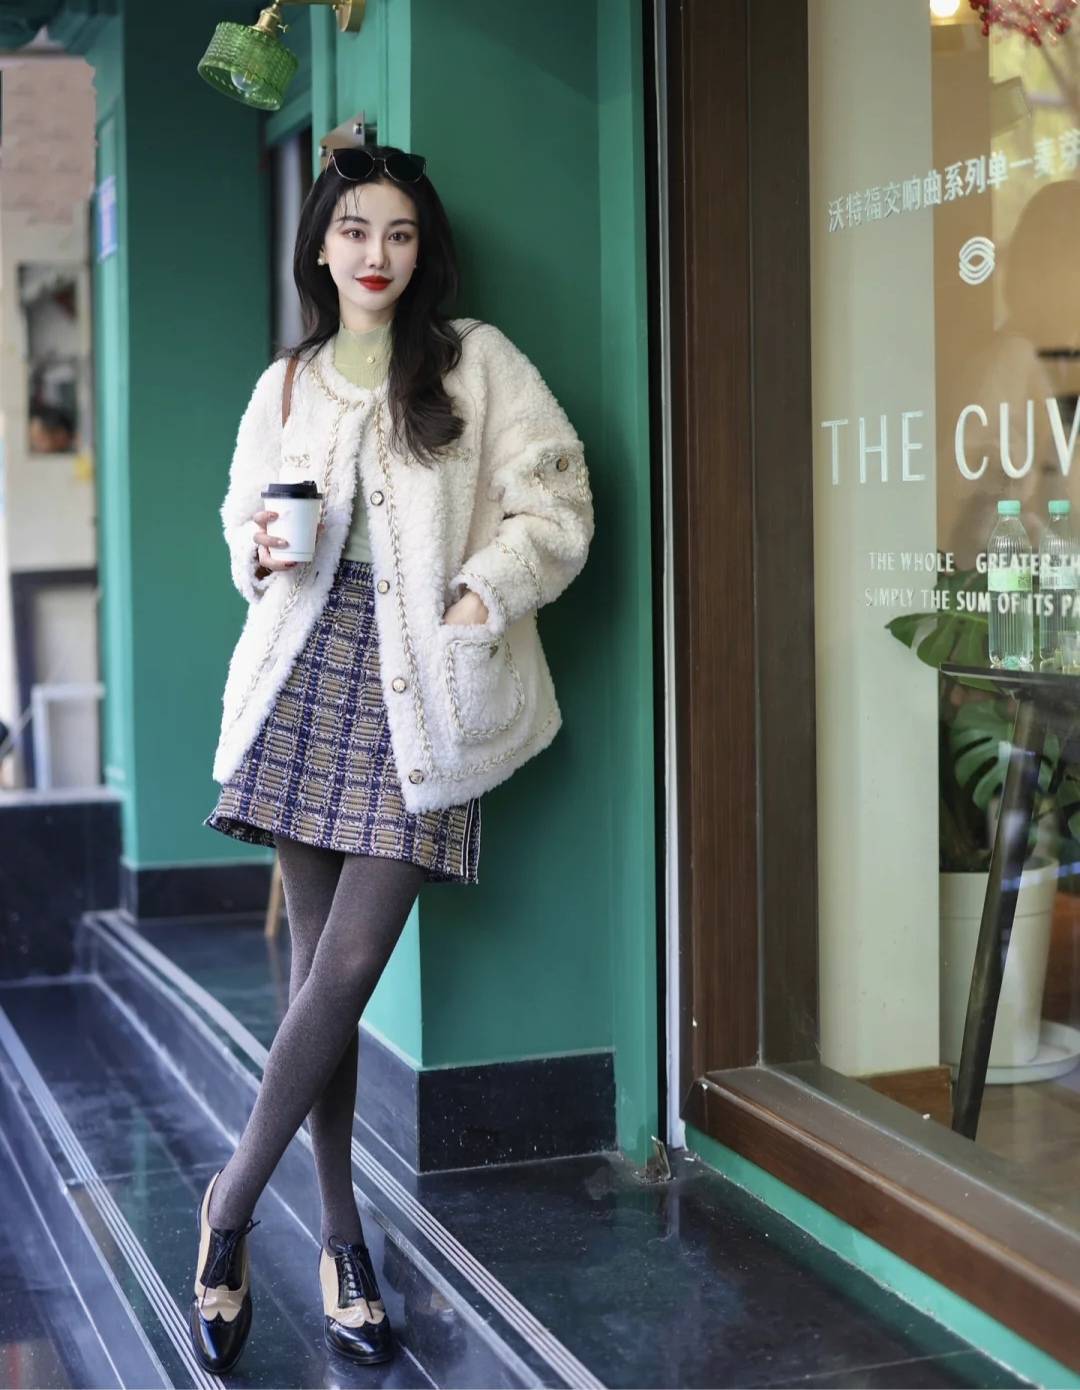 保暖又好看,上海女人冬天流行这么穿,59套搭配普通人照穿也美